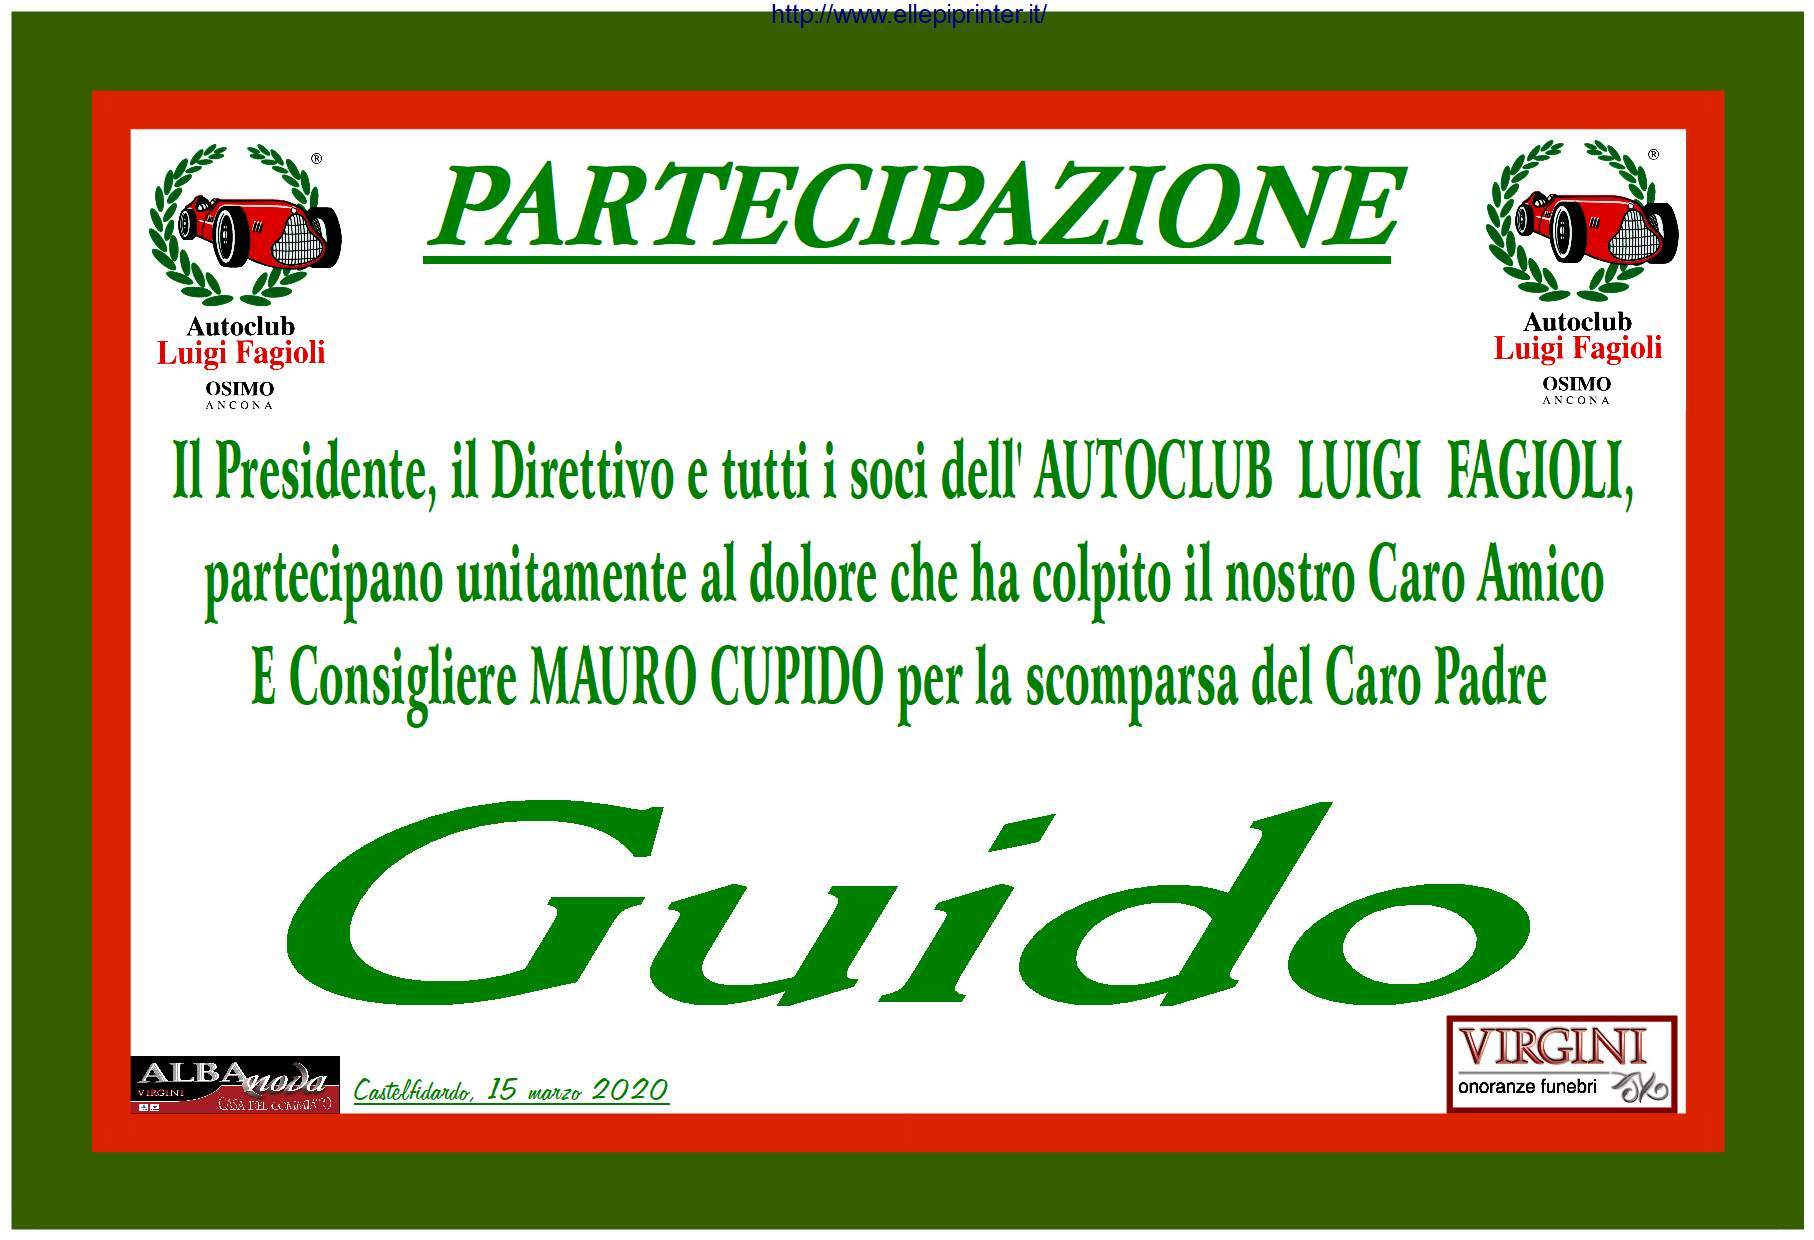 "Autoclub Luigi Fagioli"